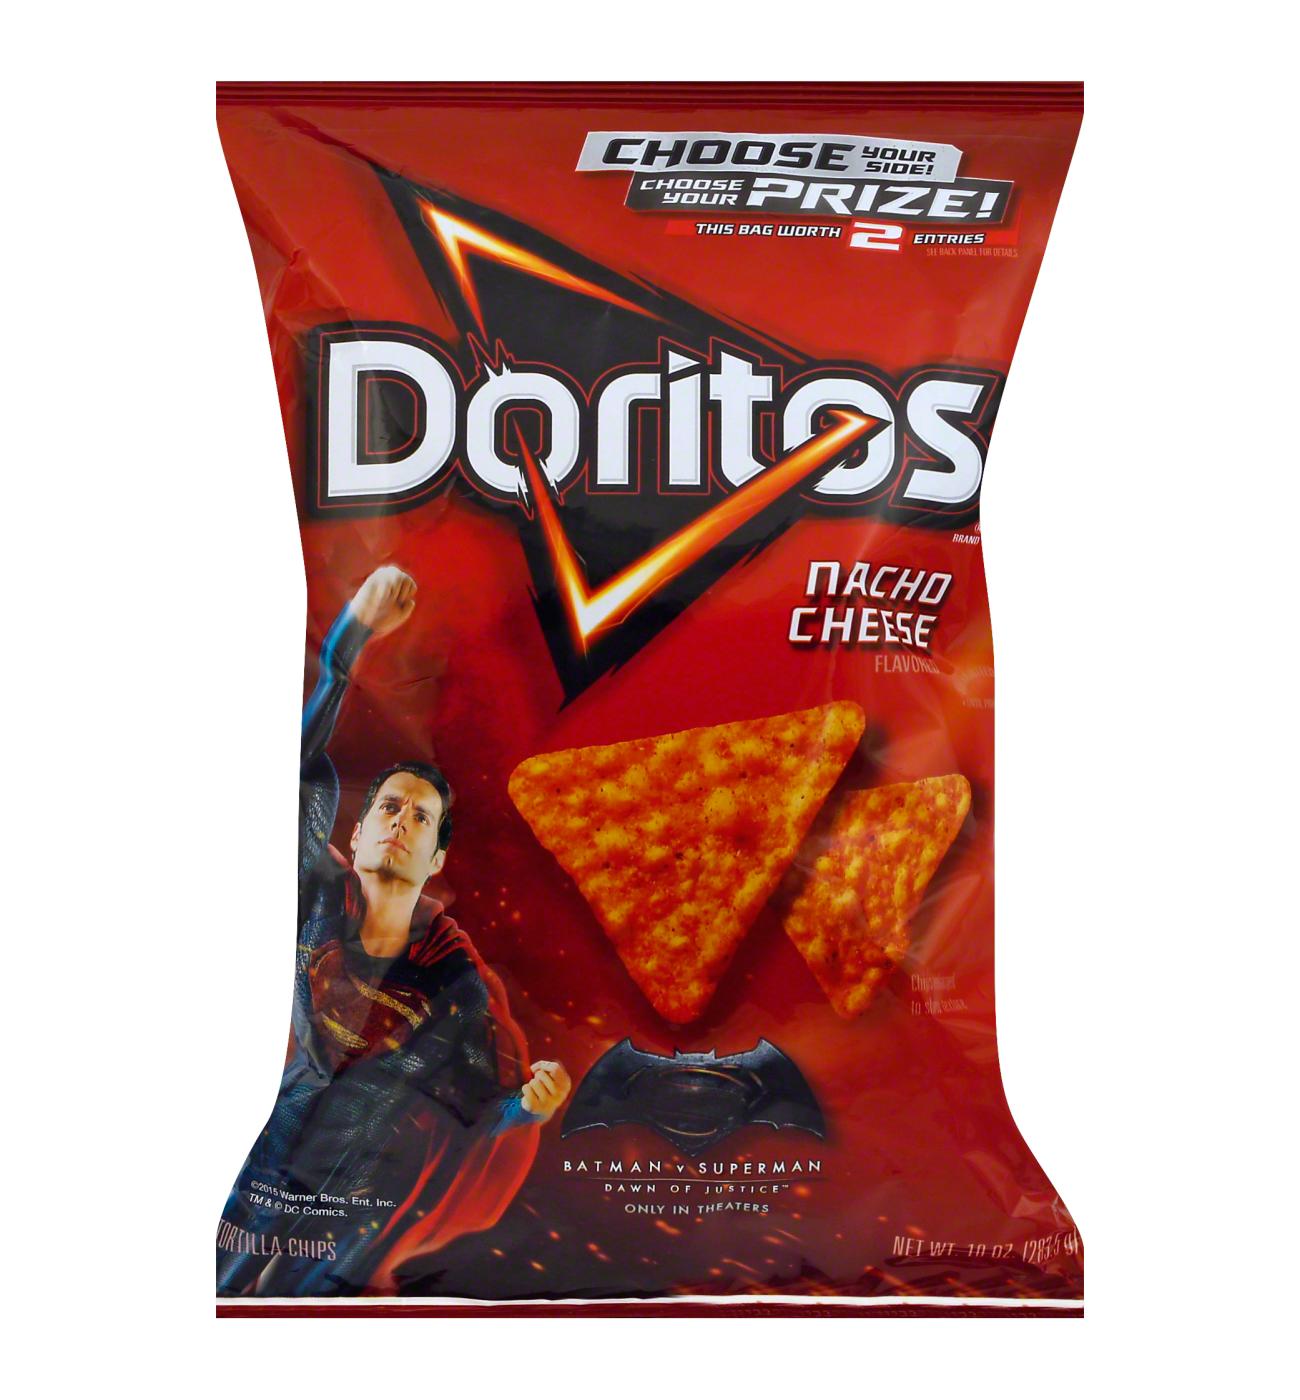 Doritos Nacho Cheese Flavored Tortilla Chips; image 1 of 2